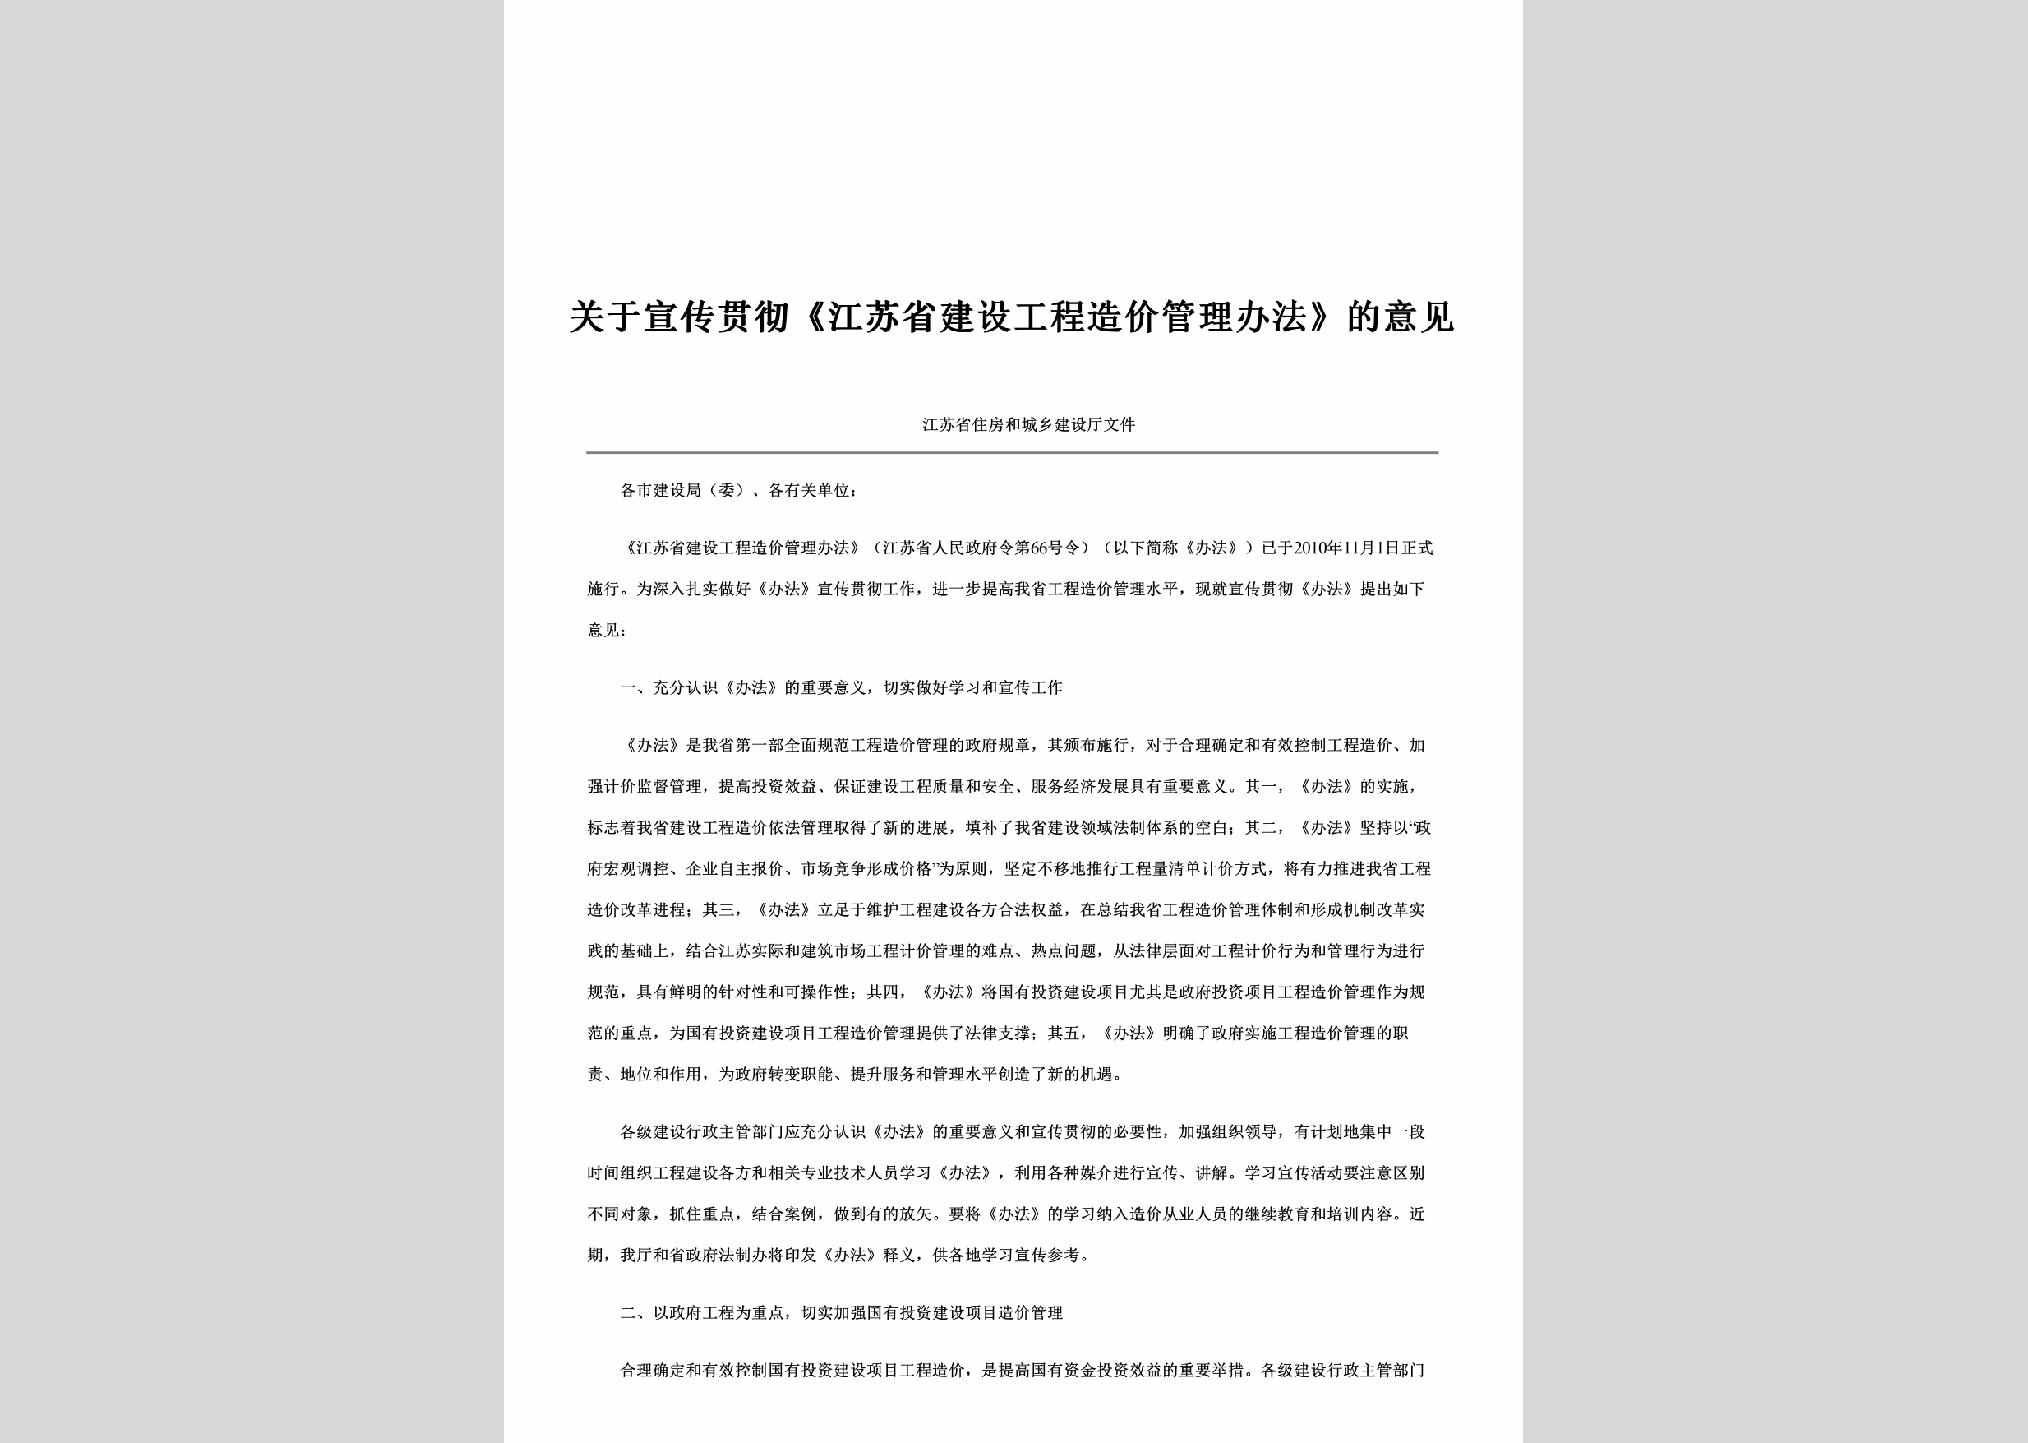 JS-JSGCGLYJ-2010：关于宣传贯彻《江苏省建设工程造价管理办法》的意见